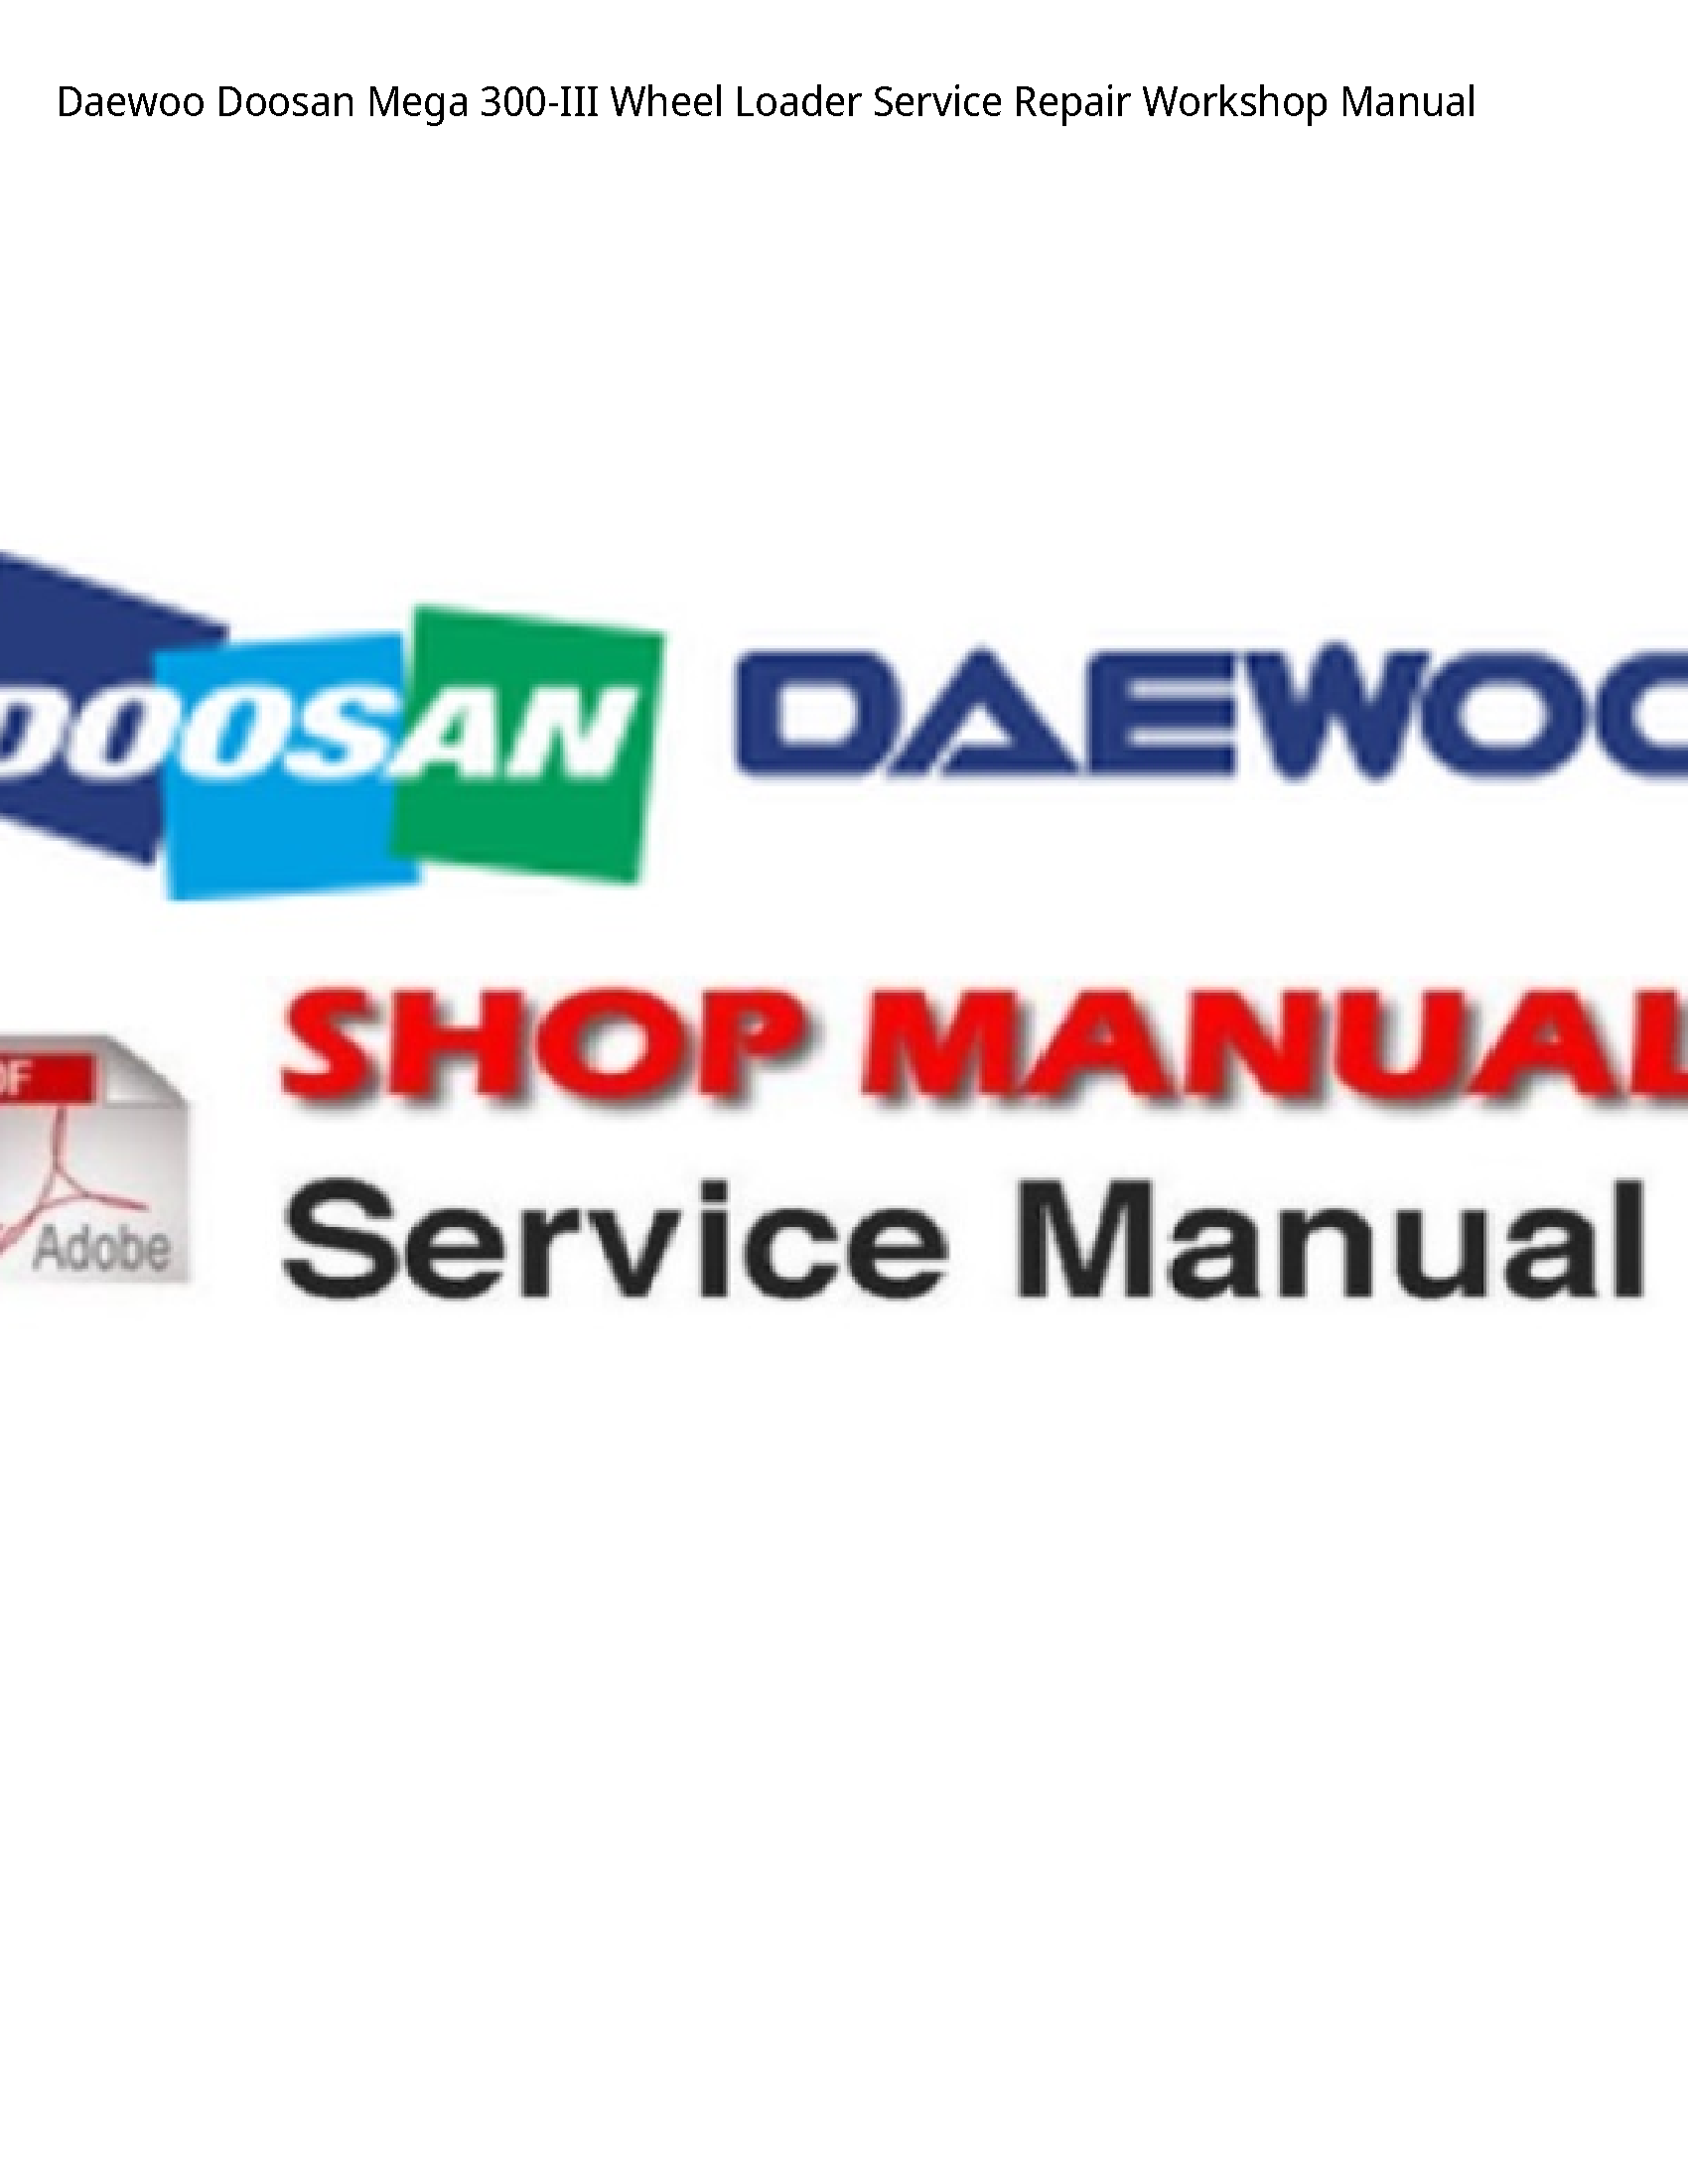 Daewoo Doosan 300-III Mega Wheel Loader manual